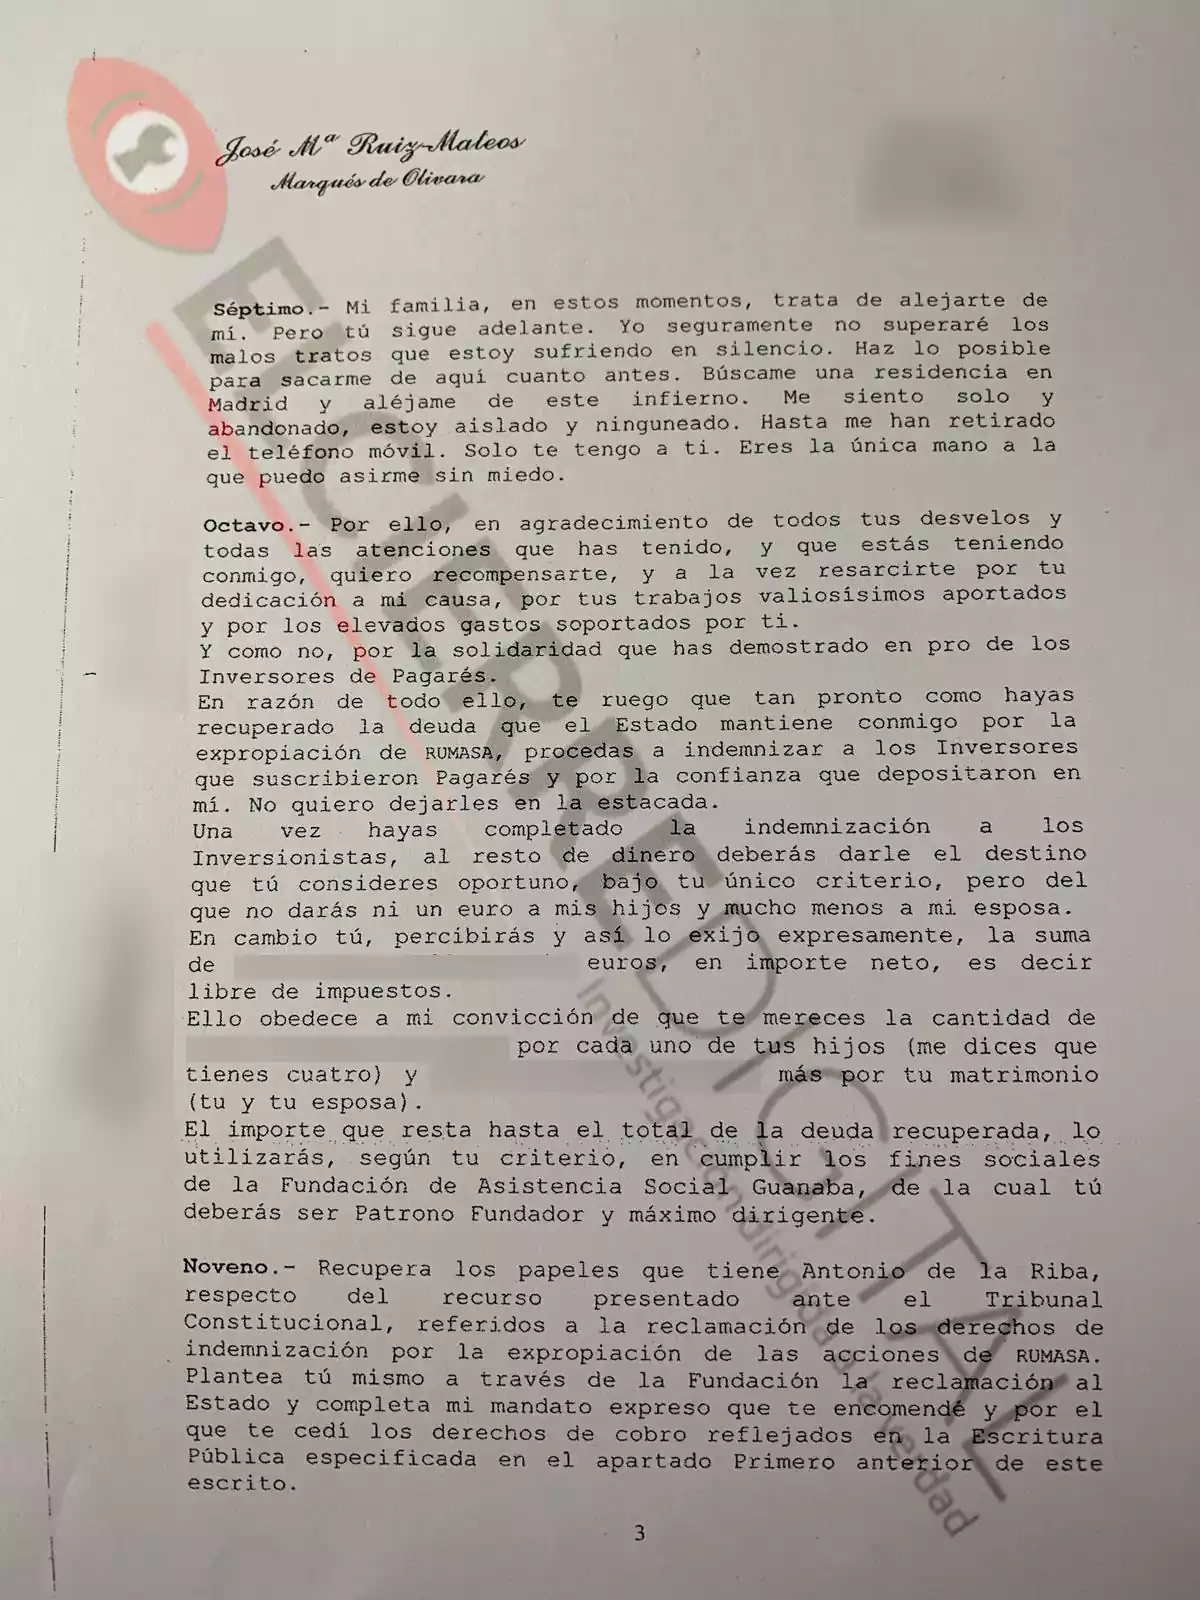 Tercera página del último escrito que José María Ruiz-Mateos firmó antes de morir, en el que dice cuánto dinero debe recibir Urdiciáin por su ayuda y afirma sentirse 